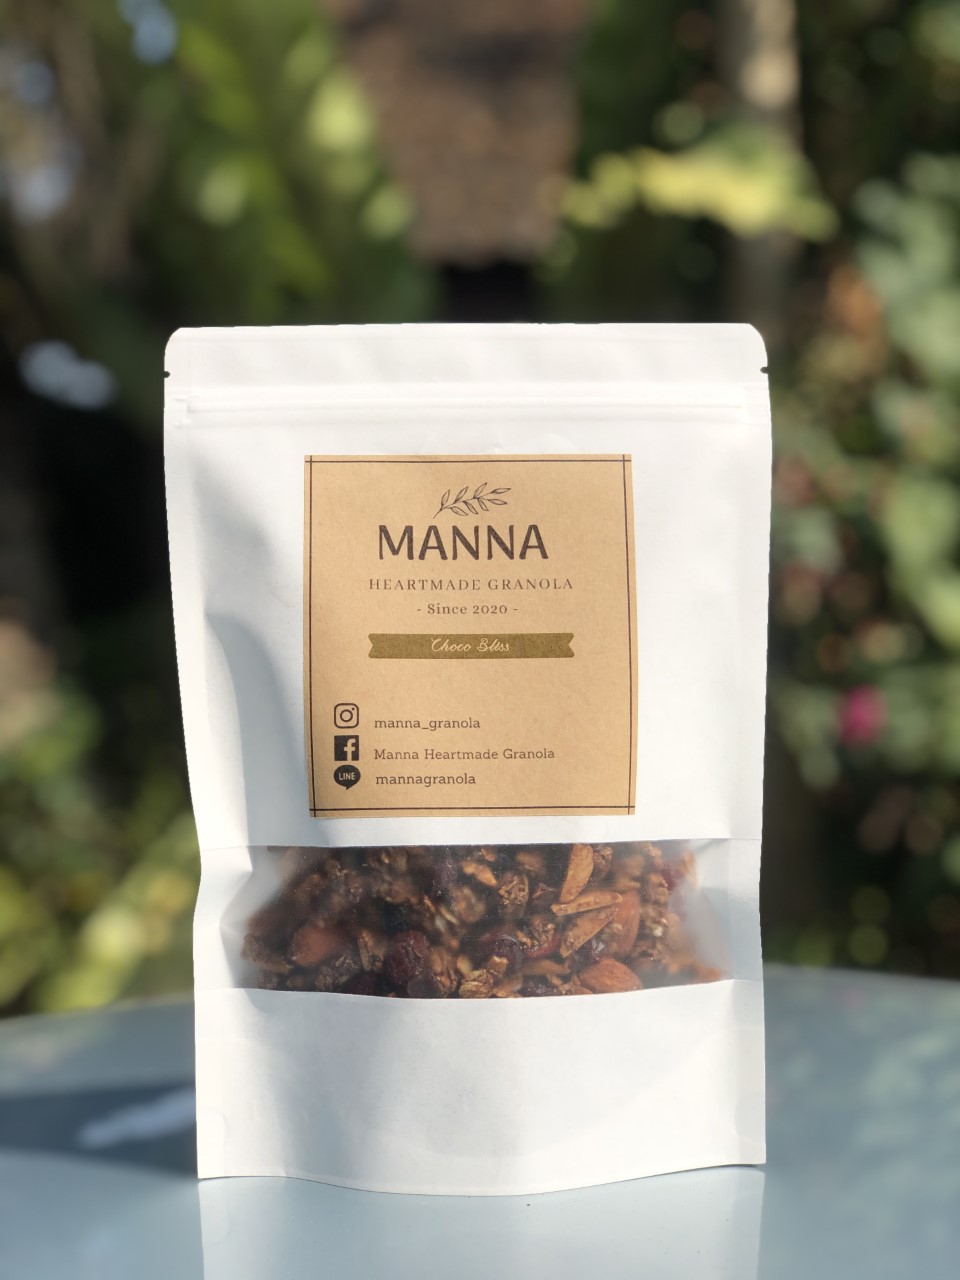 รายละเอียดเพิ่มเติมเกี่ยวกับ Manna Heartmade Granola กราโนล่า Made to Order รสโกโก้ Choco Bliss ขนาดใหญ่ 180 g